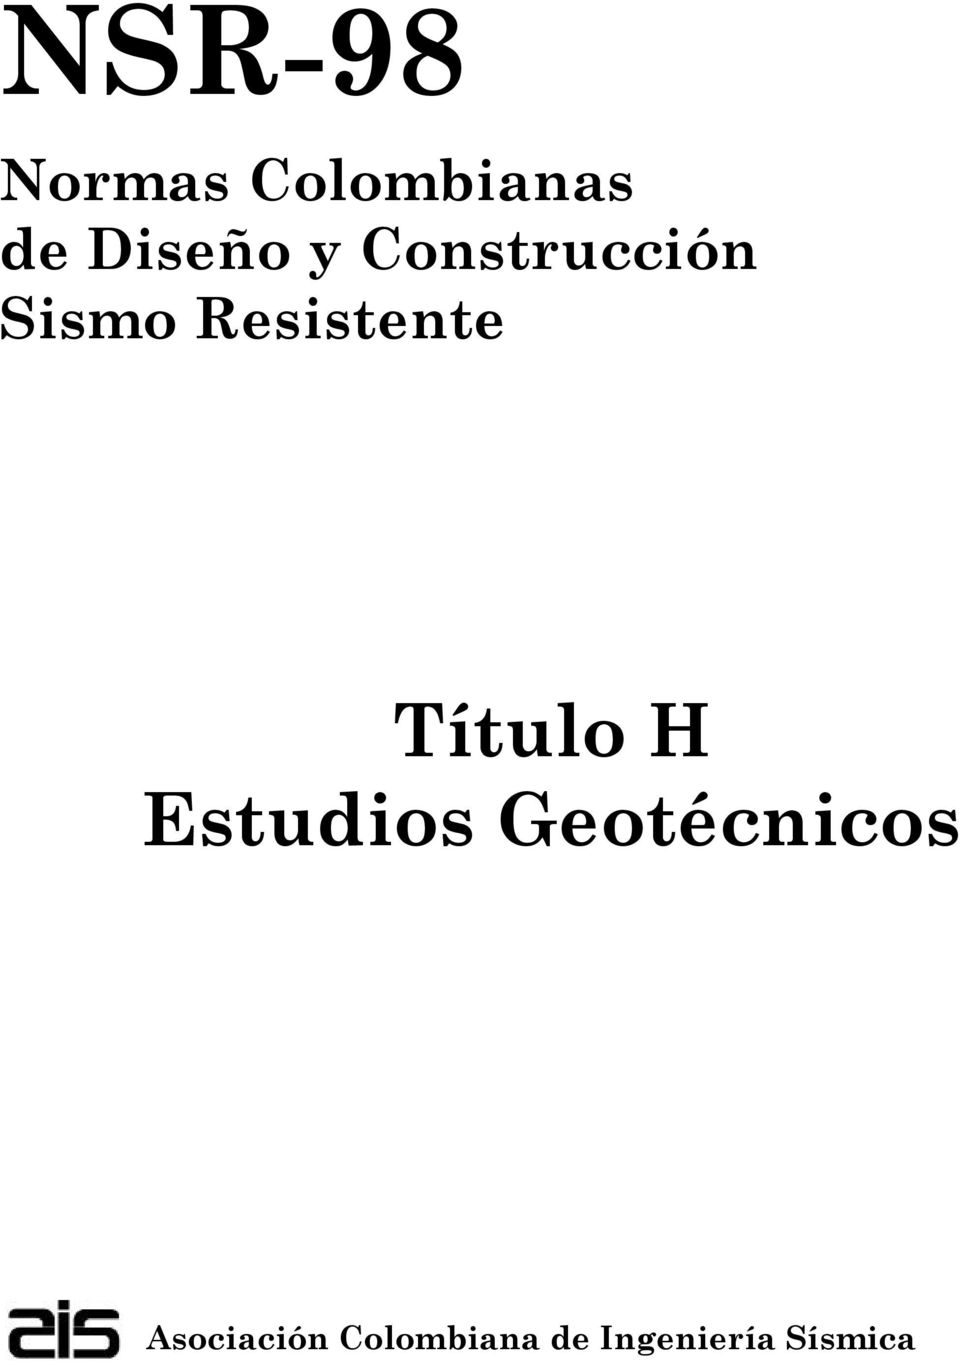 Título H Estudios Geotécnicos